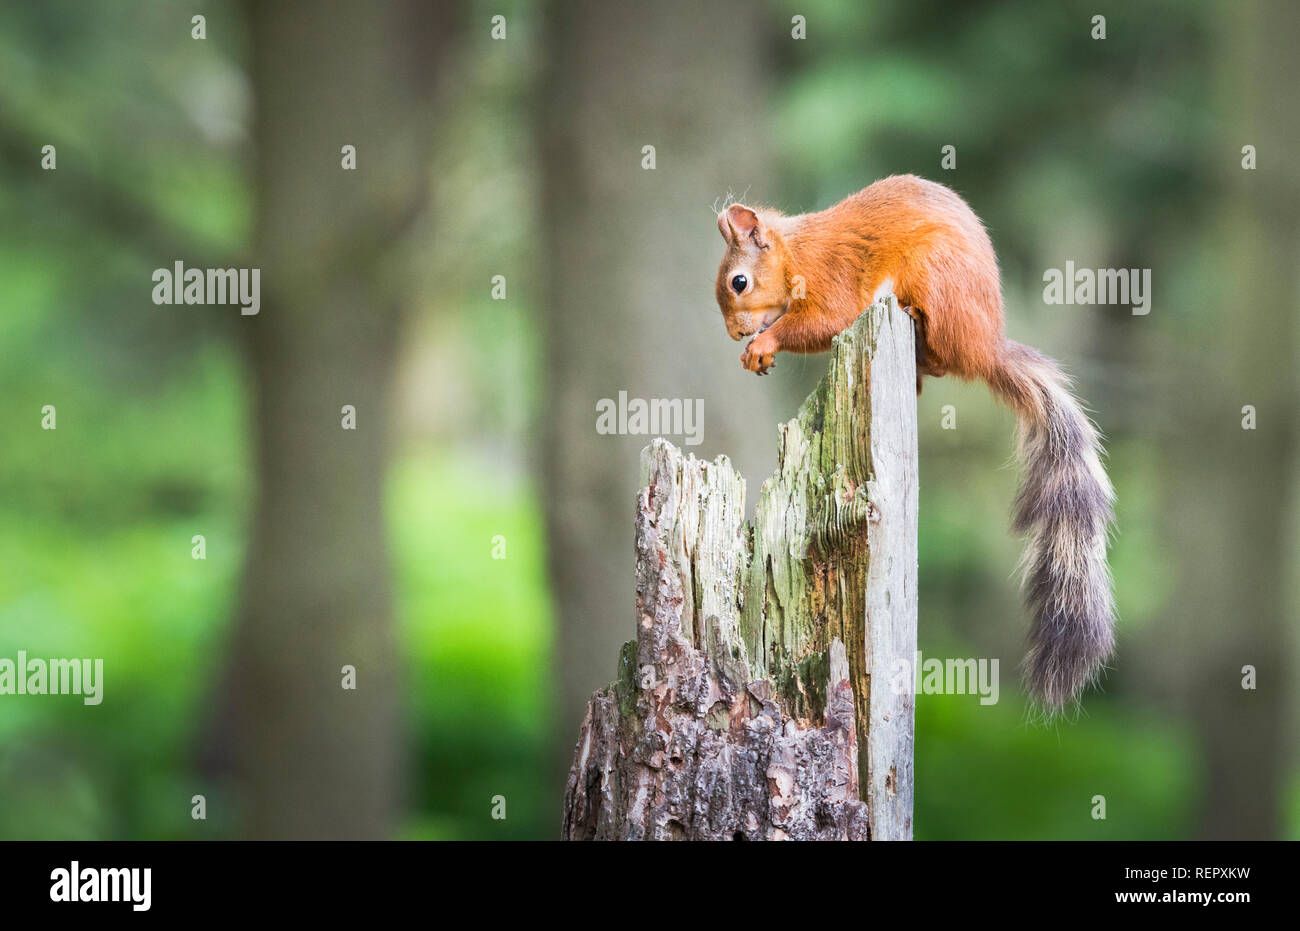 Uno scoiattolo rosso utilizza la sua coda per il bilanciamento sulla parte superiore di un vecchio albero rotto il moncone in mezzo al bosco mentre l'alimentazione Foto Stock